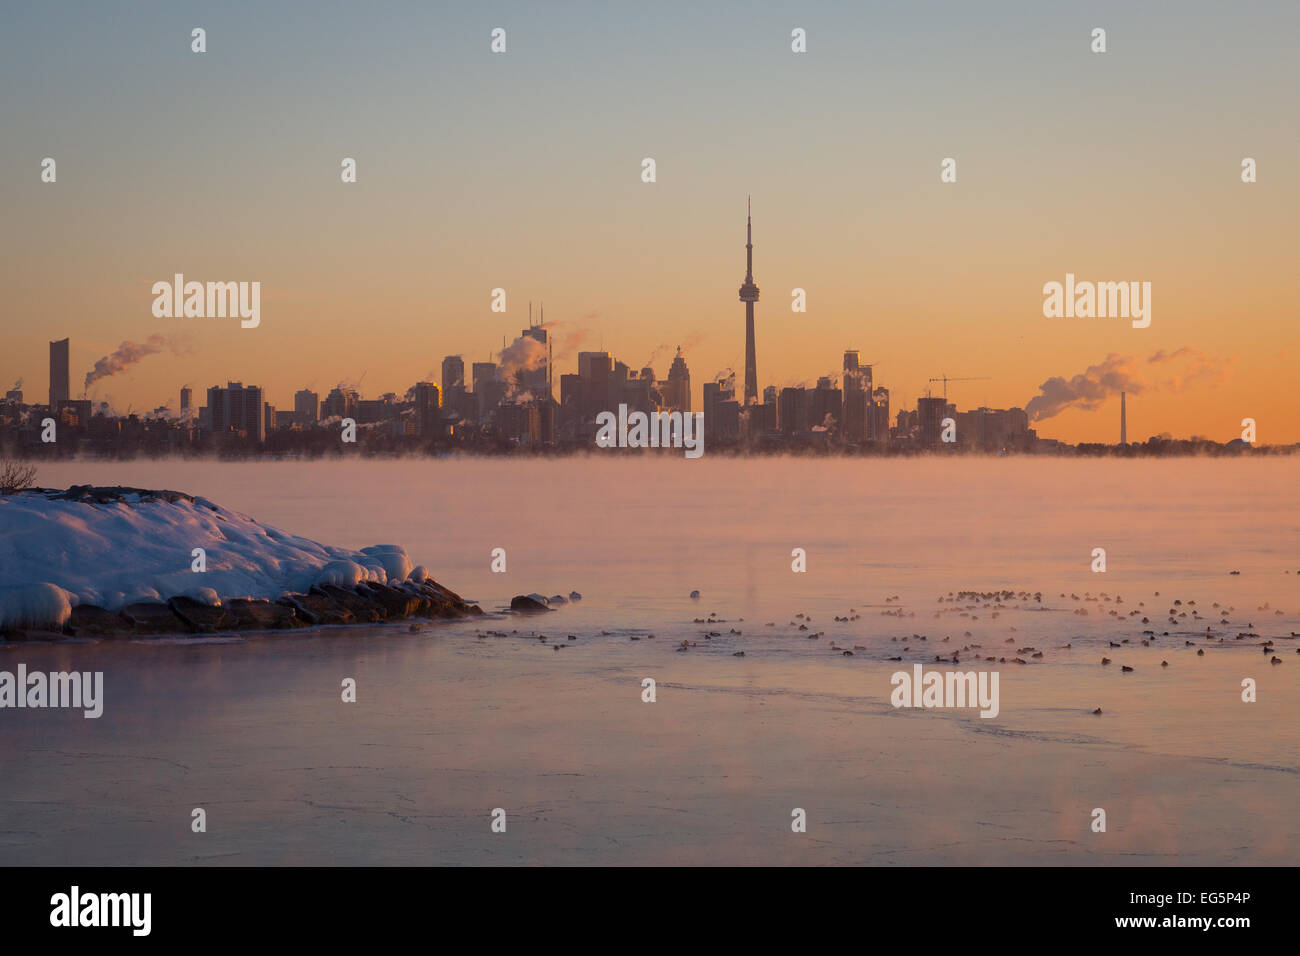 El amanecer iluminado horizonte de Toronto con vapor heladas aguas del lago Ontario como -25C polar envuelve airmass oriental de América del Norte Foto de stock